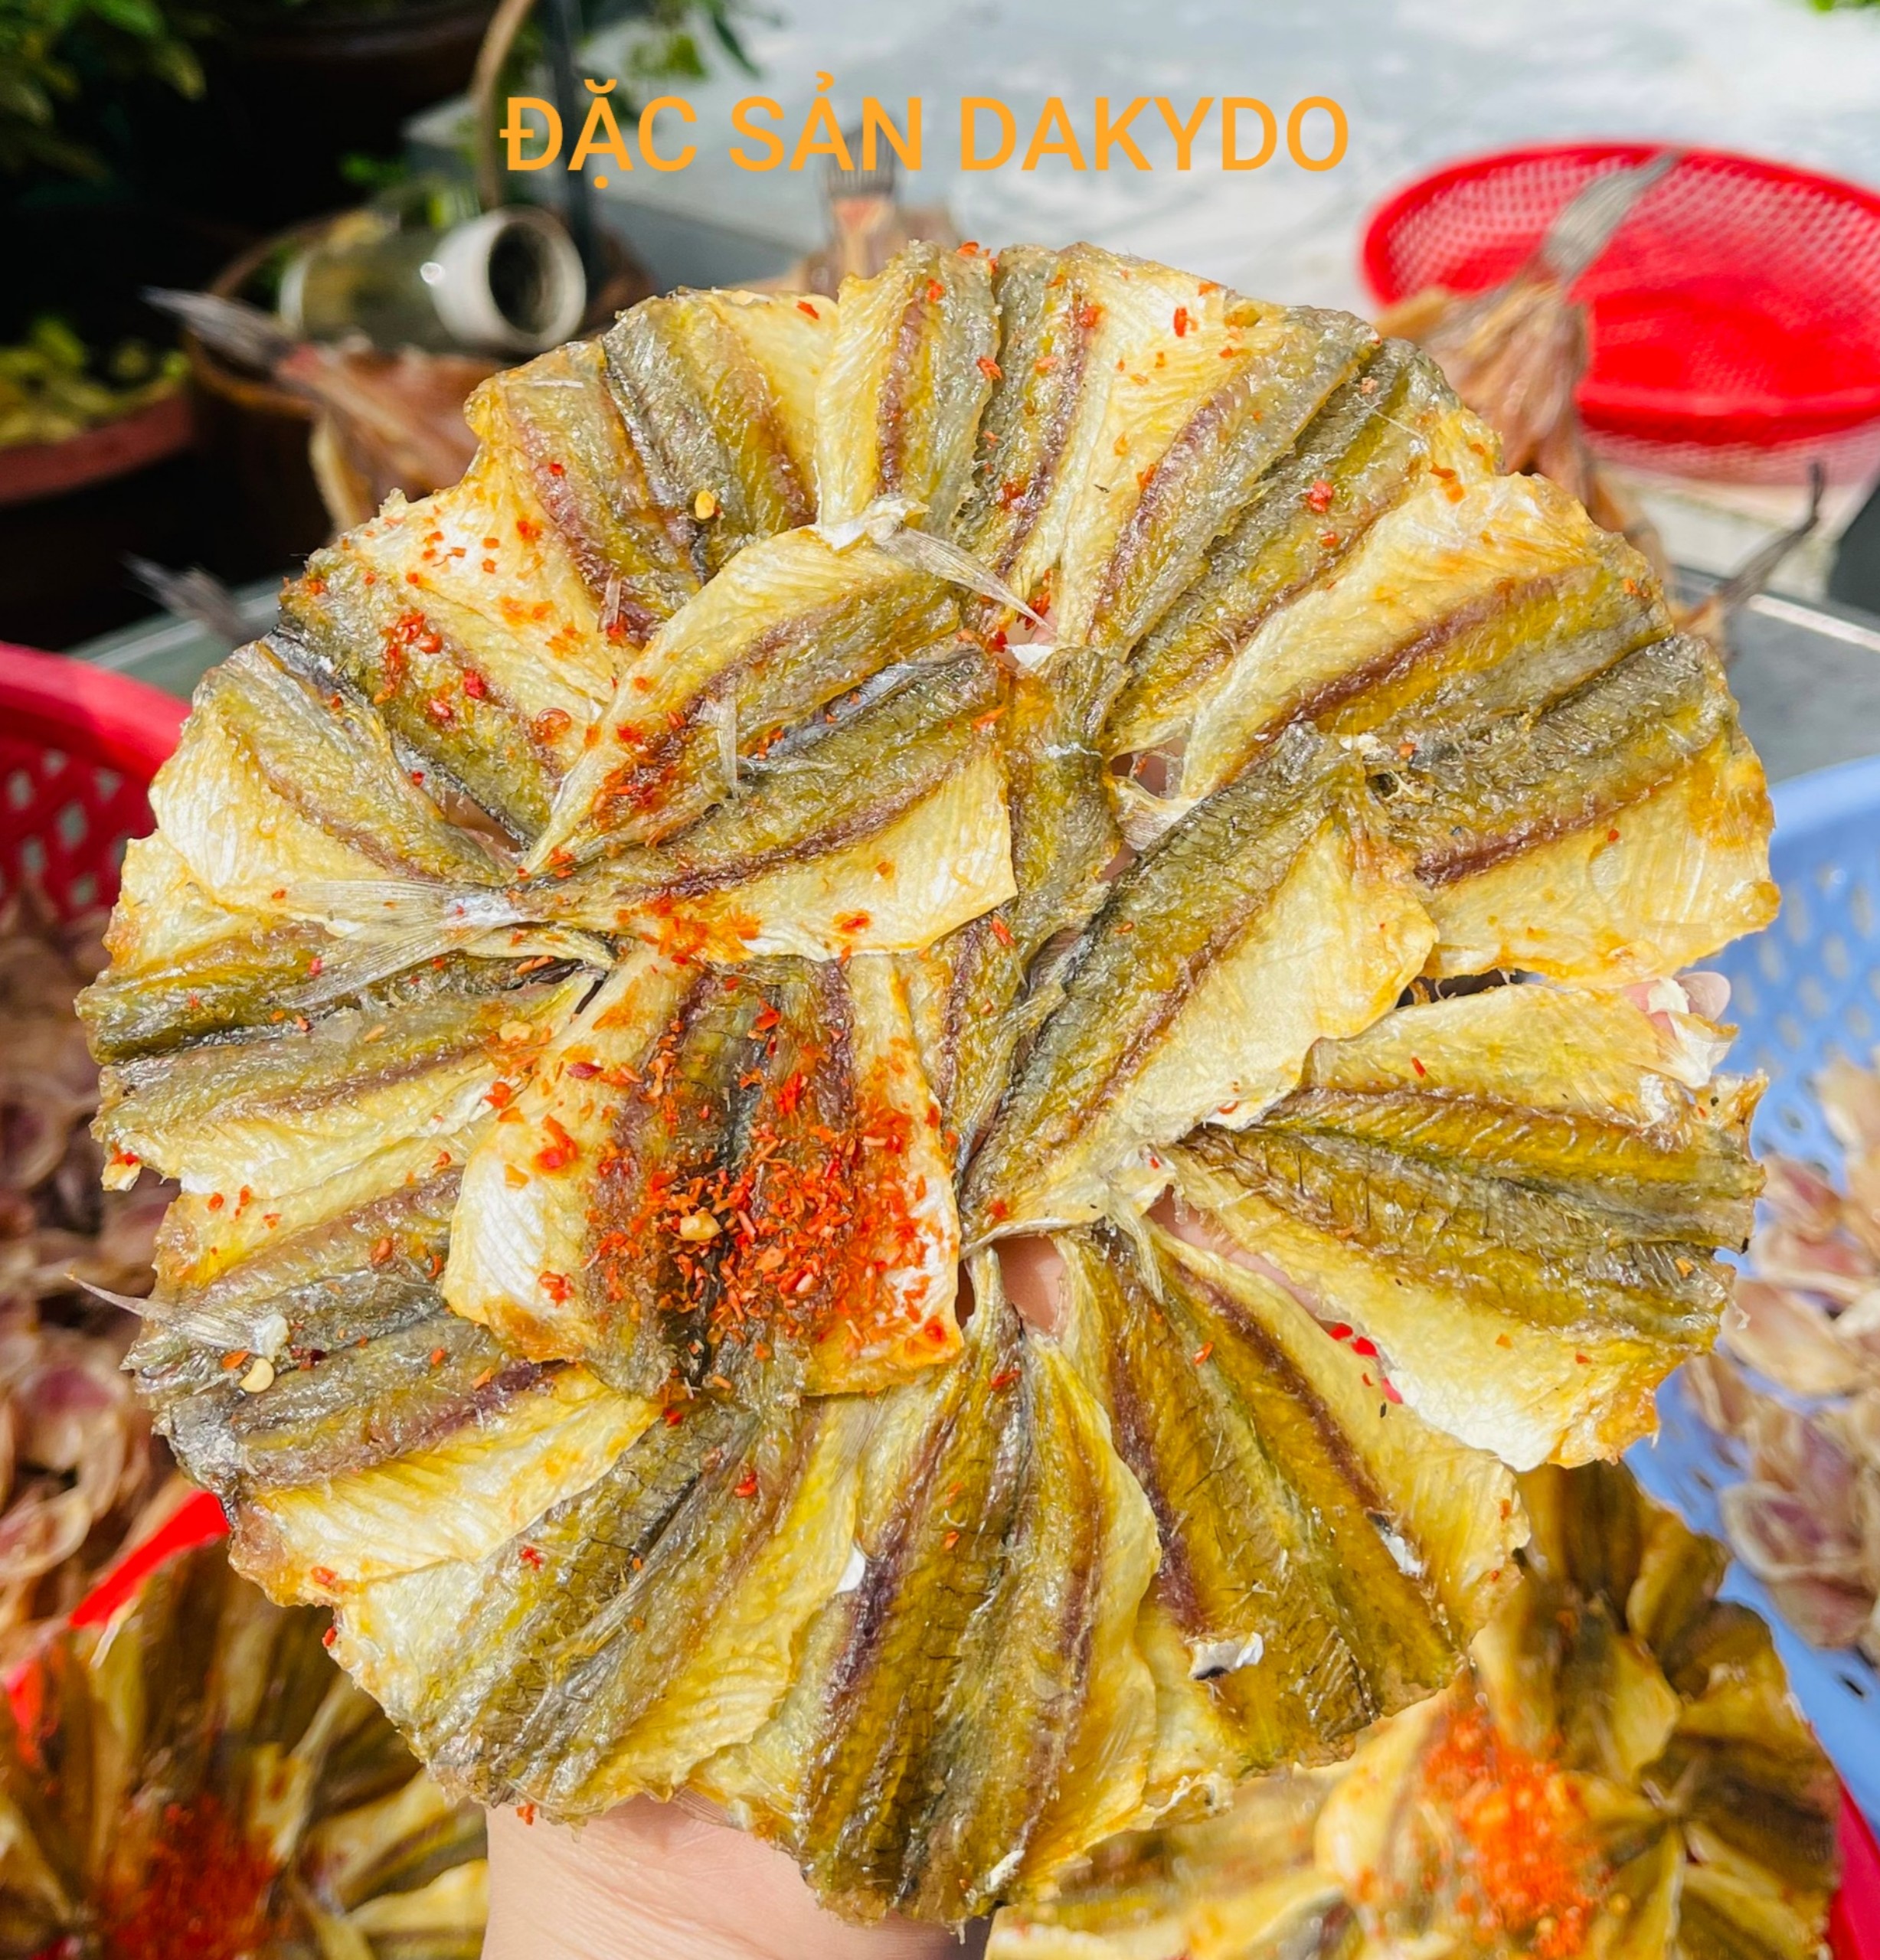 Khô cá chỉ vàng loại nhất 1kg, thương hiệu đặc sản Dakydo An Giang, ăn là